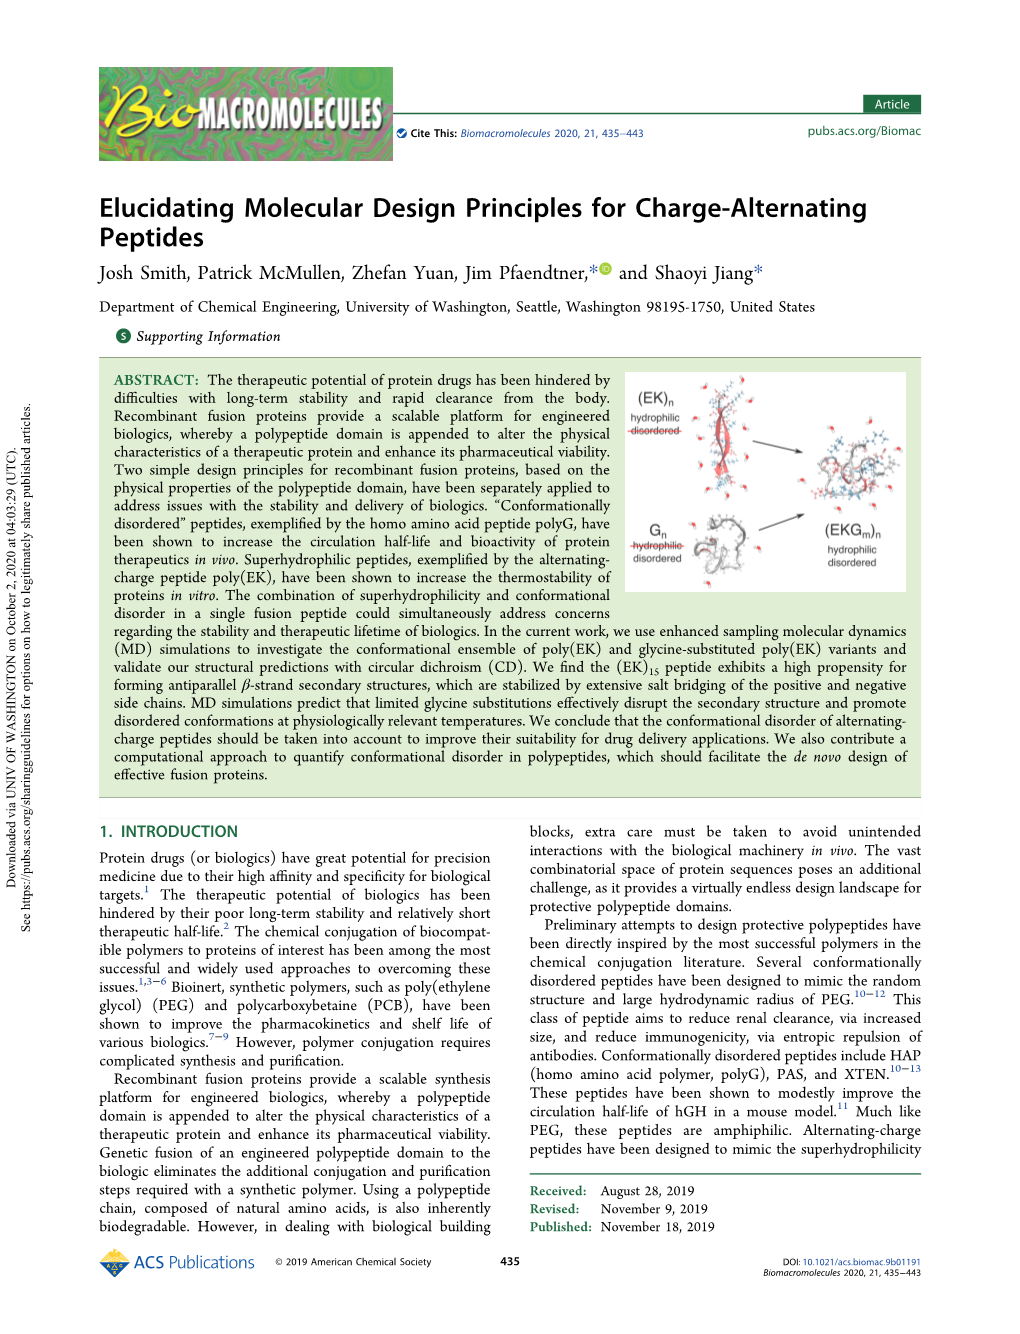 Elucidating Molecular Design Principles for Charge-Alternating Peptides